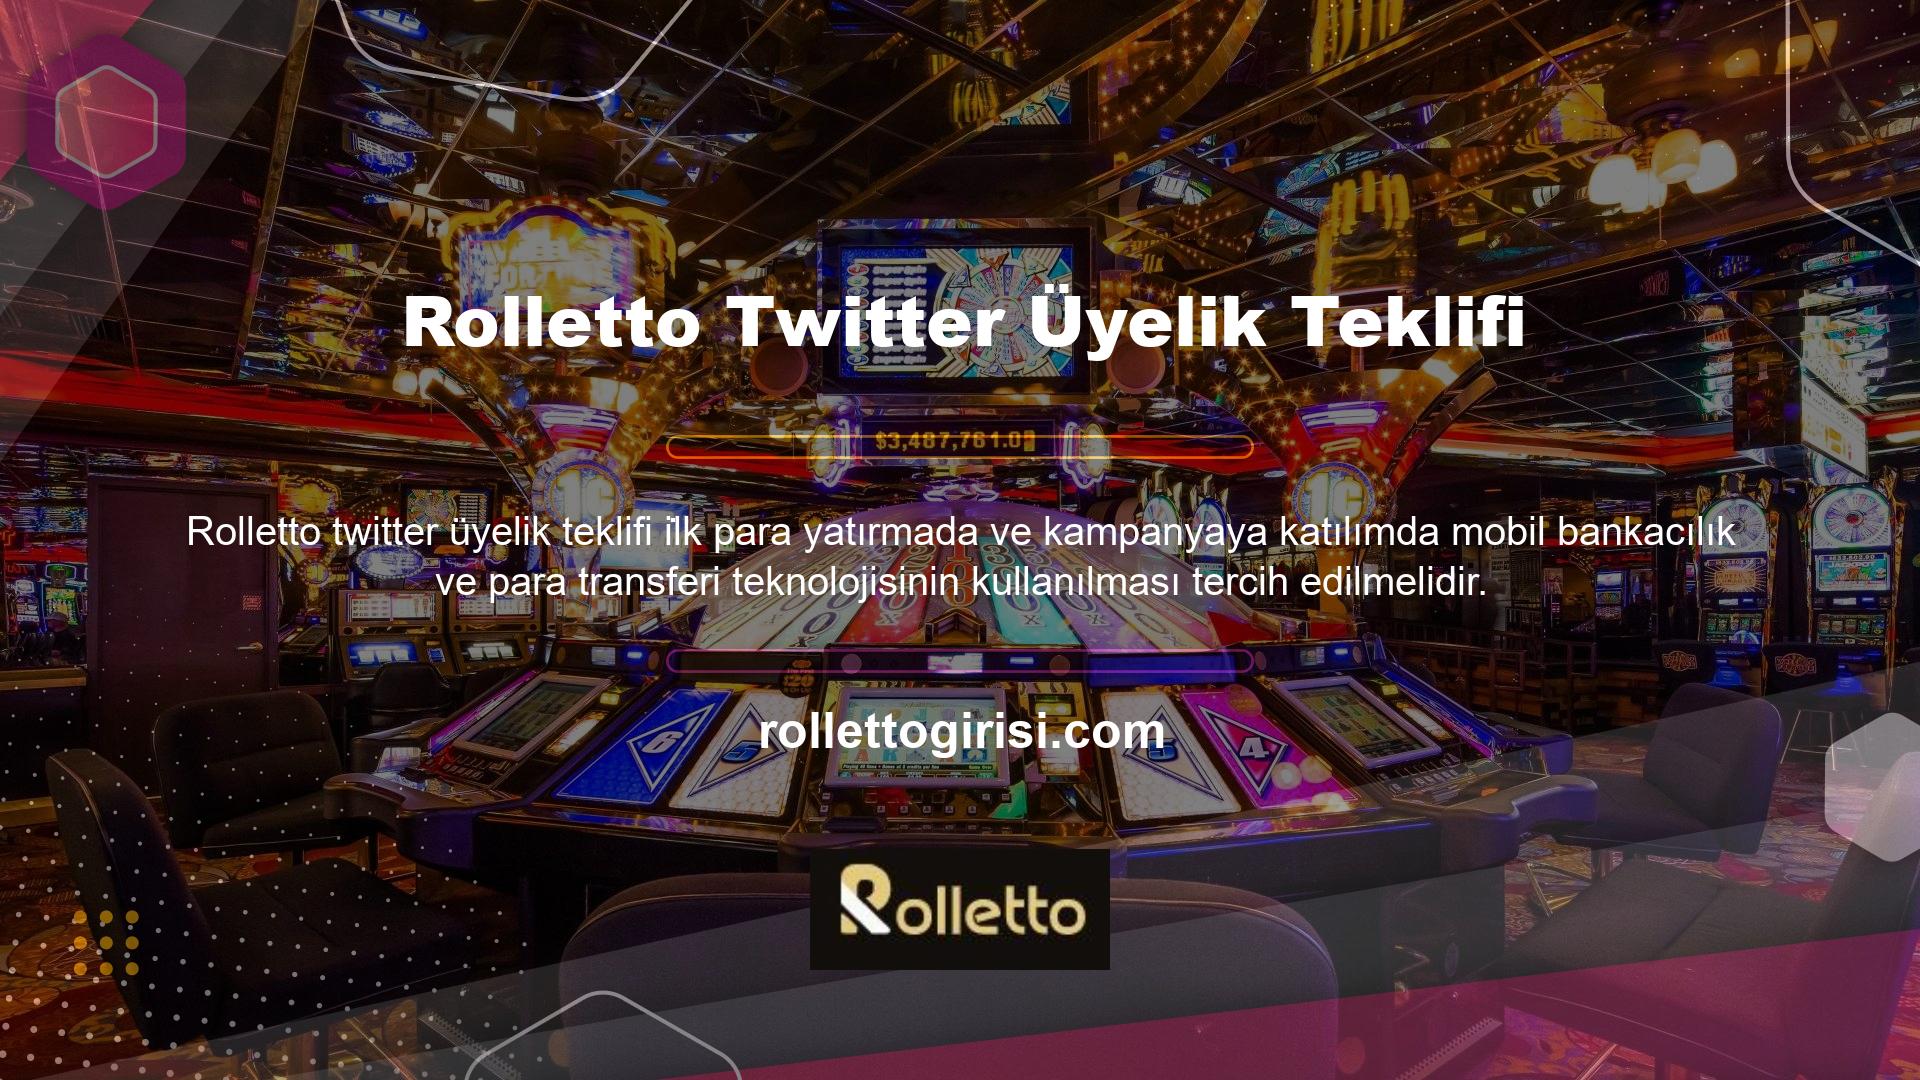 Spor bahislerinde bulunan büyük kazançlara ek olarak, Rolletto üyelerin casino oyunları için oy kullanabilecekleri Twitter anketi, daha aşırı eğlence, daha popüler tahta oyunları ve daha popüler oyunlar bulacaktır